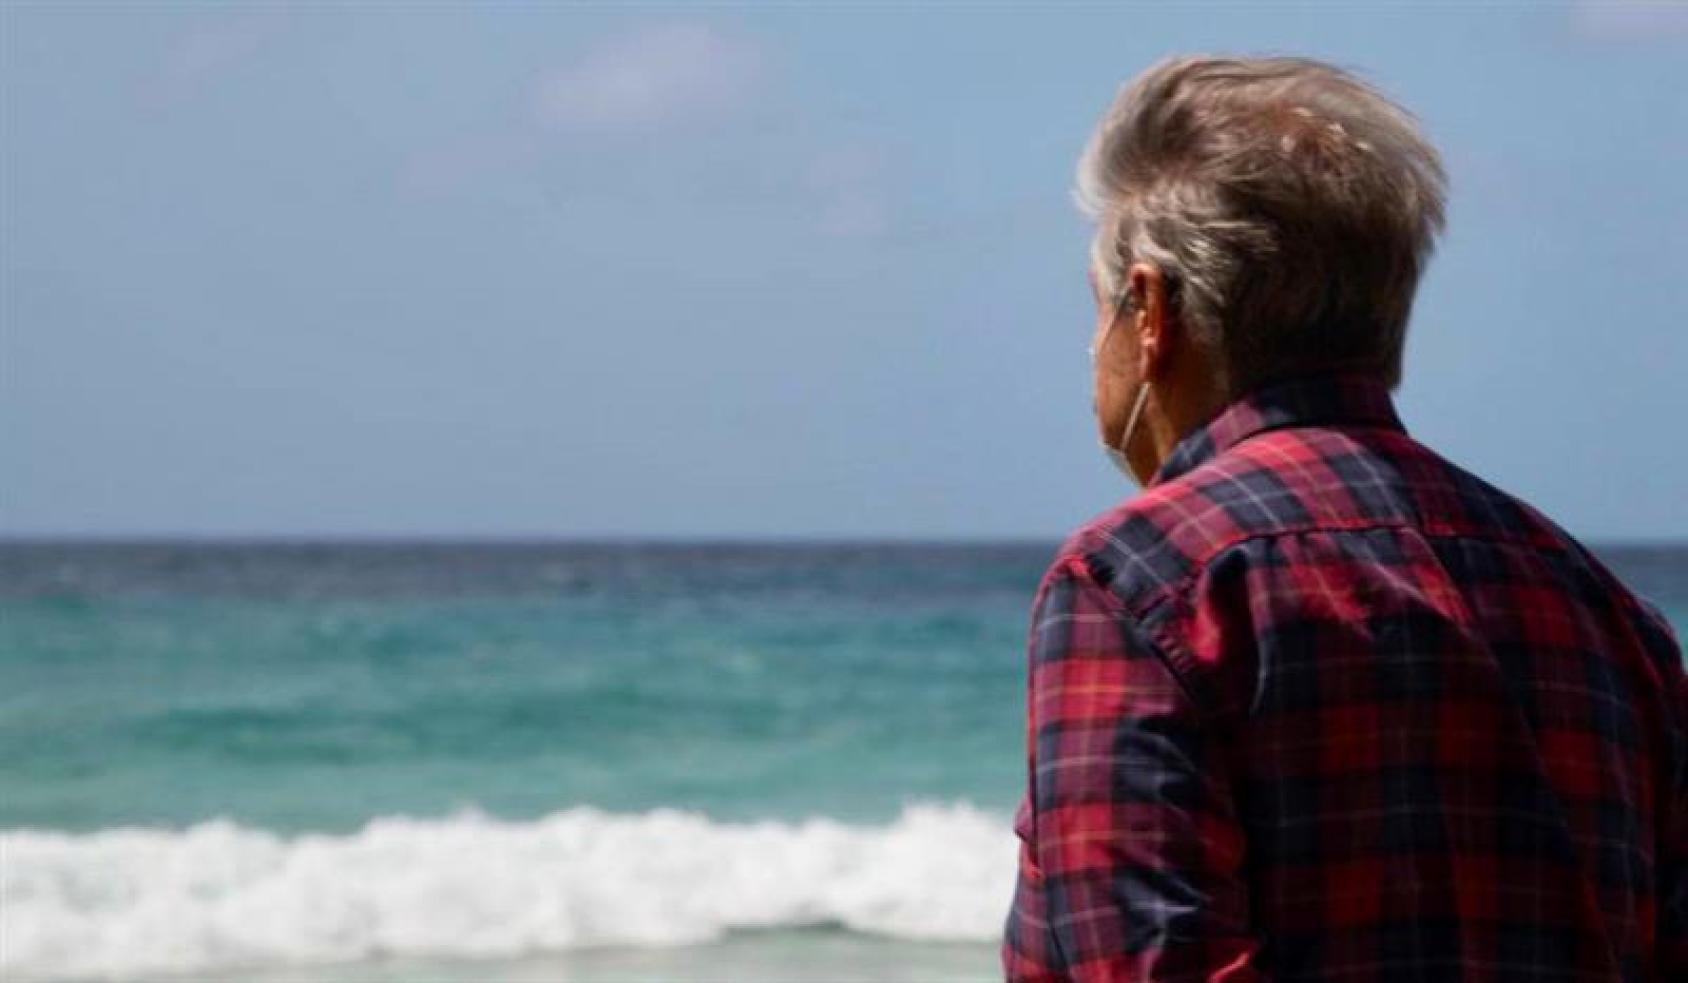 El Secretario General, António Guteres, mira al mar Caribe desde la isla de Barbados